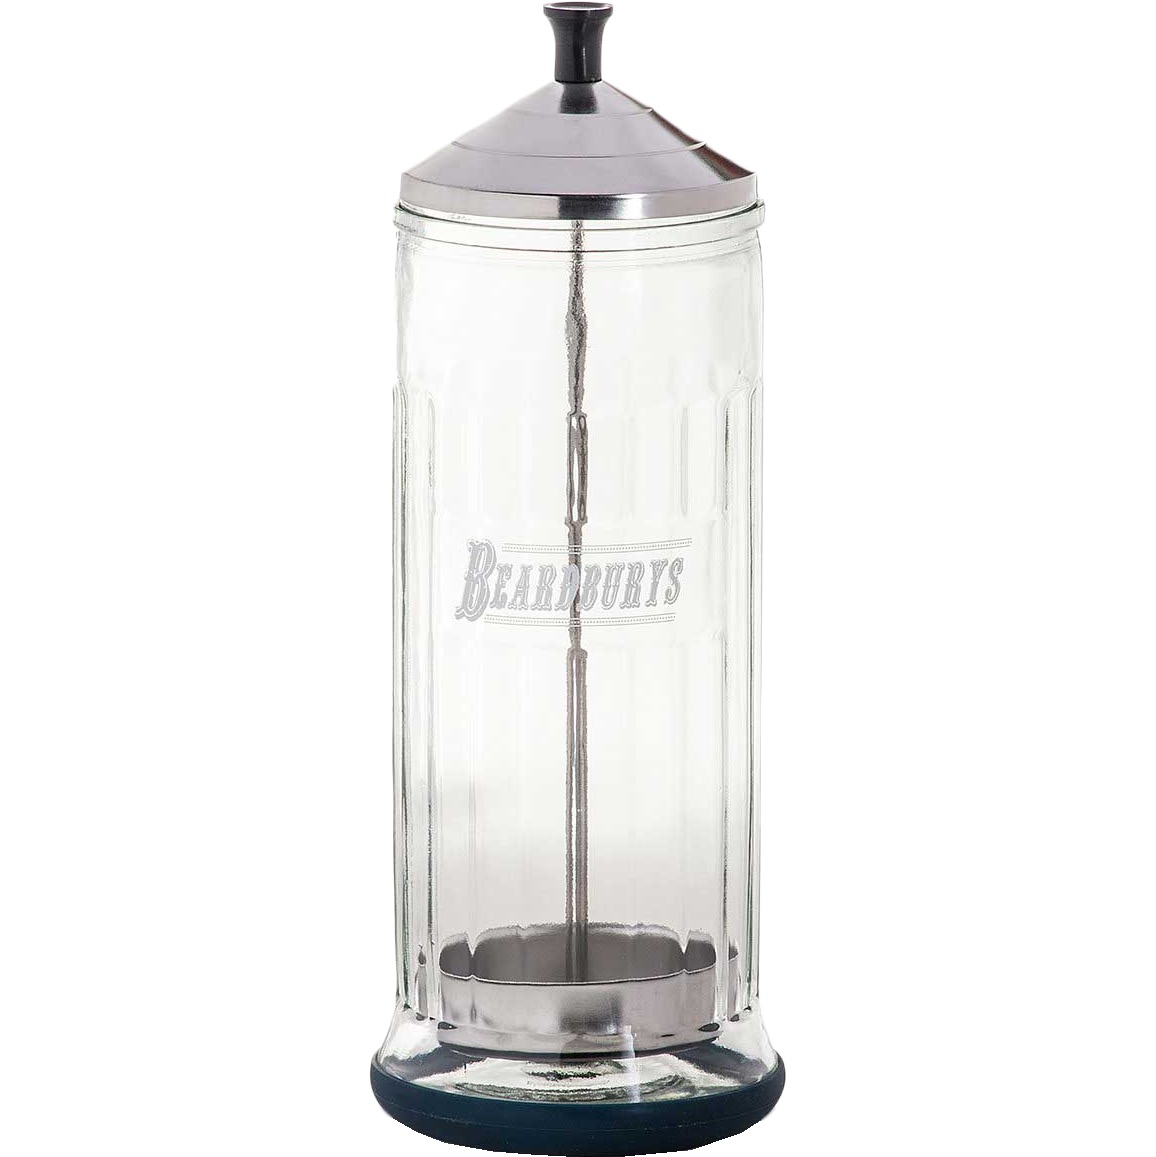 Beardburys desinfectant jar - 1.2 - BB-0430147